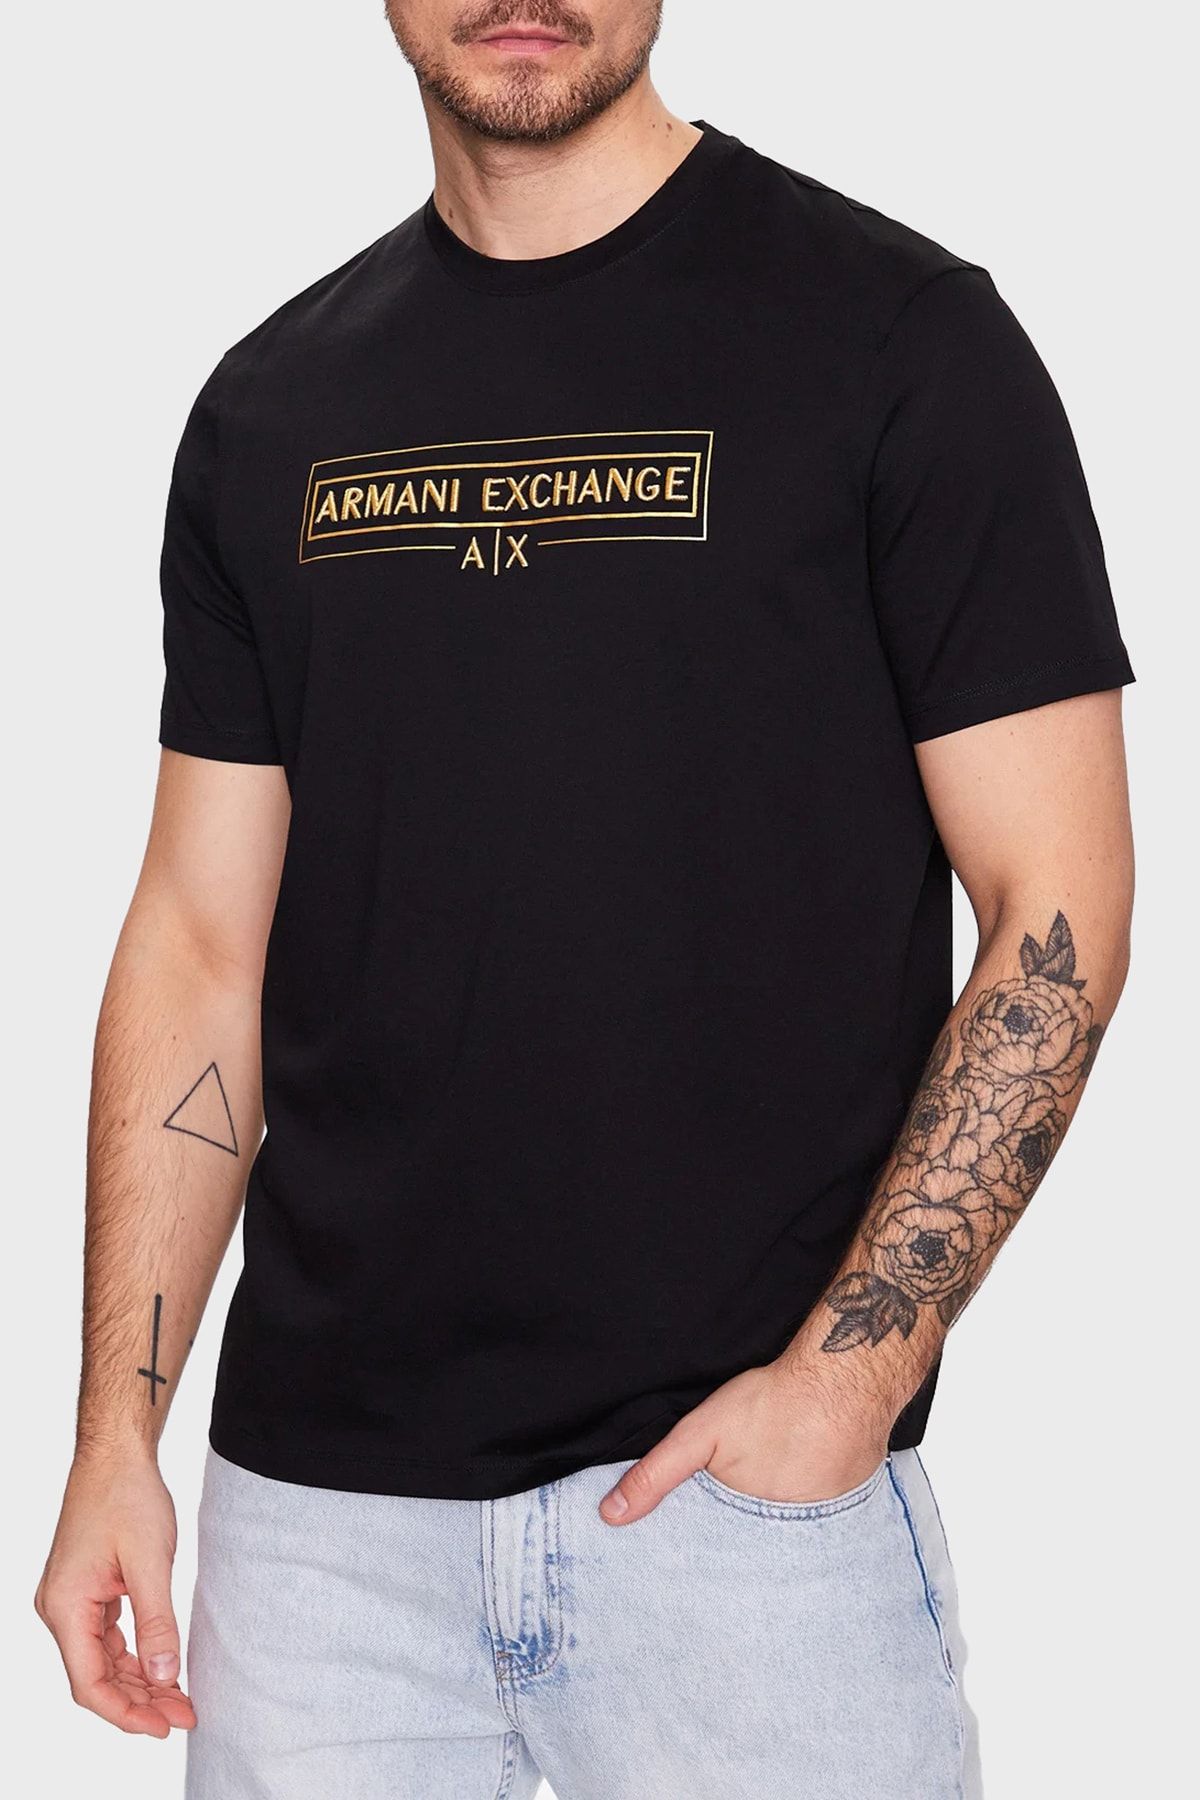 Armani Exchange % 100 Pamuk Regular Fit Bisiklet Yaka T Shirt Erkek T Shirt 3rztra Zj9az 1200